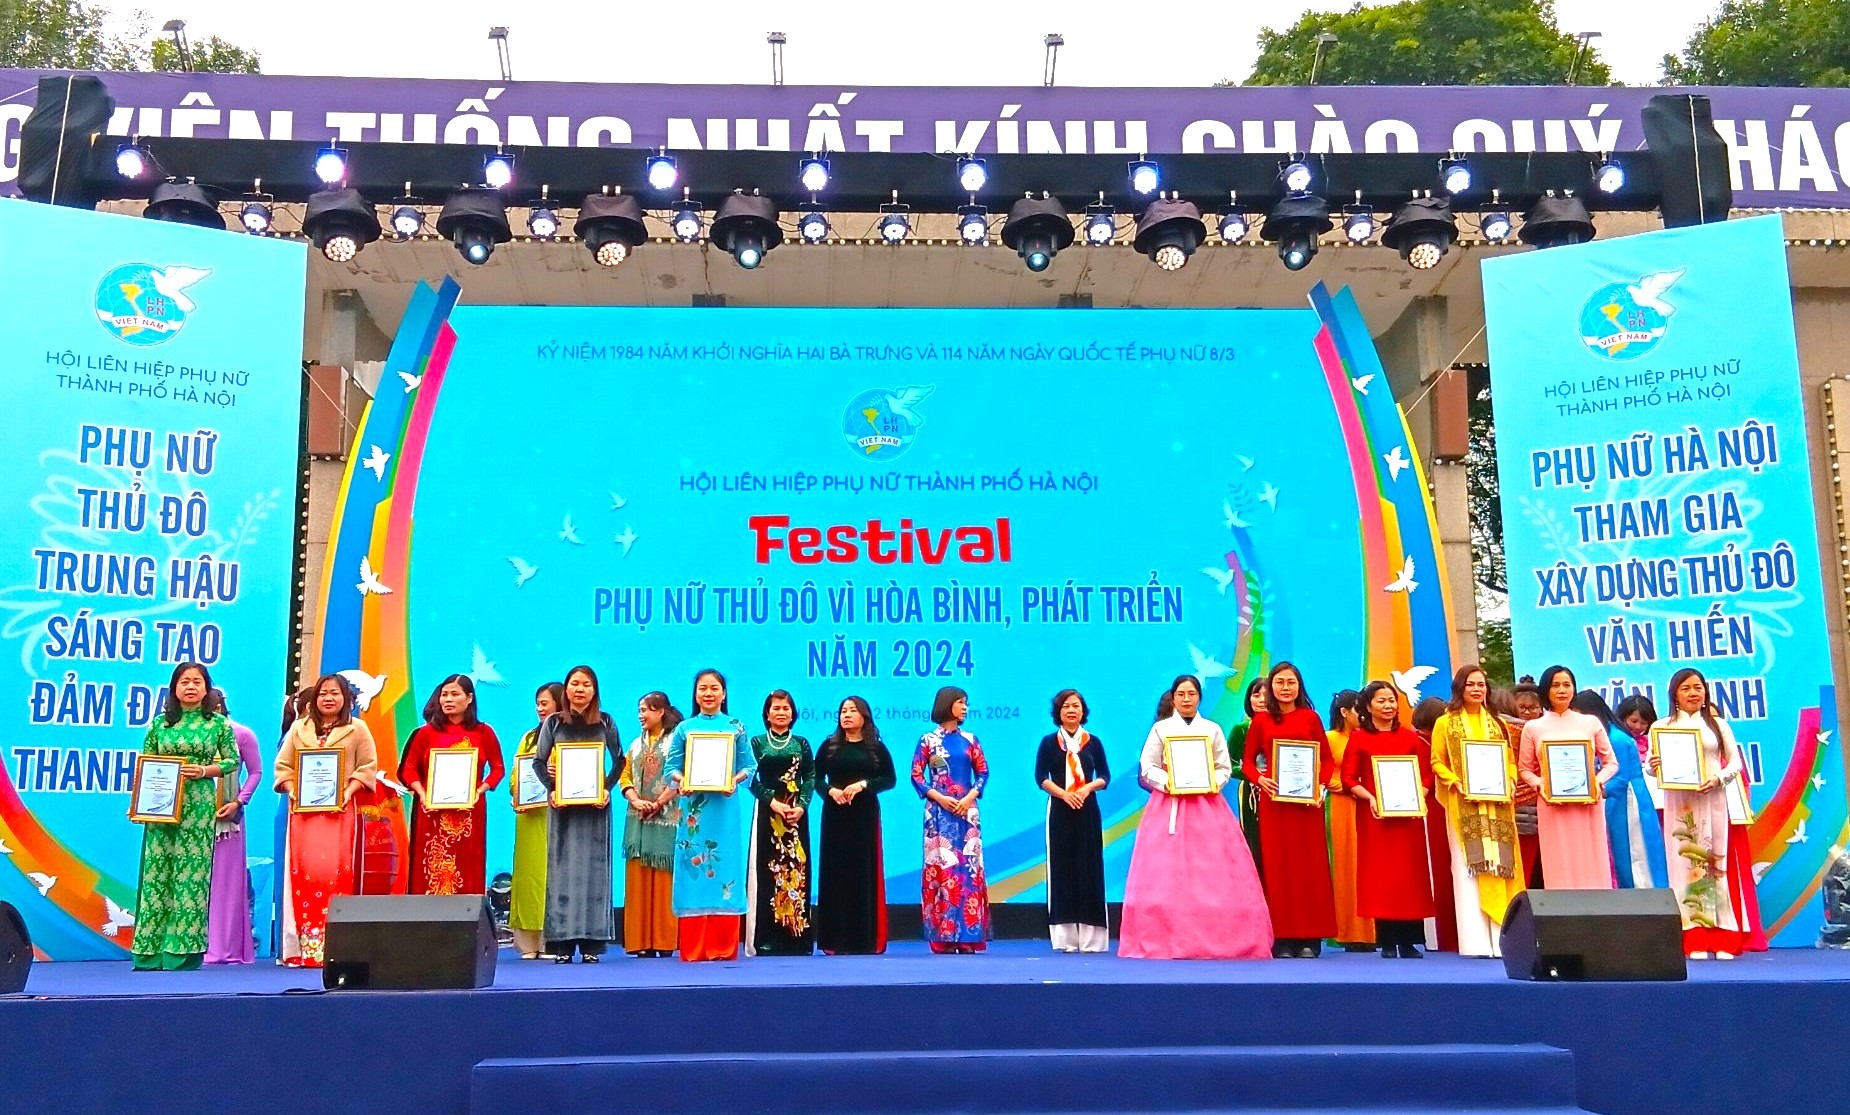 Rộn ràng Festival “Phụ nữ Thủ đô vì hòa bình, phát triển” năm 2024